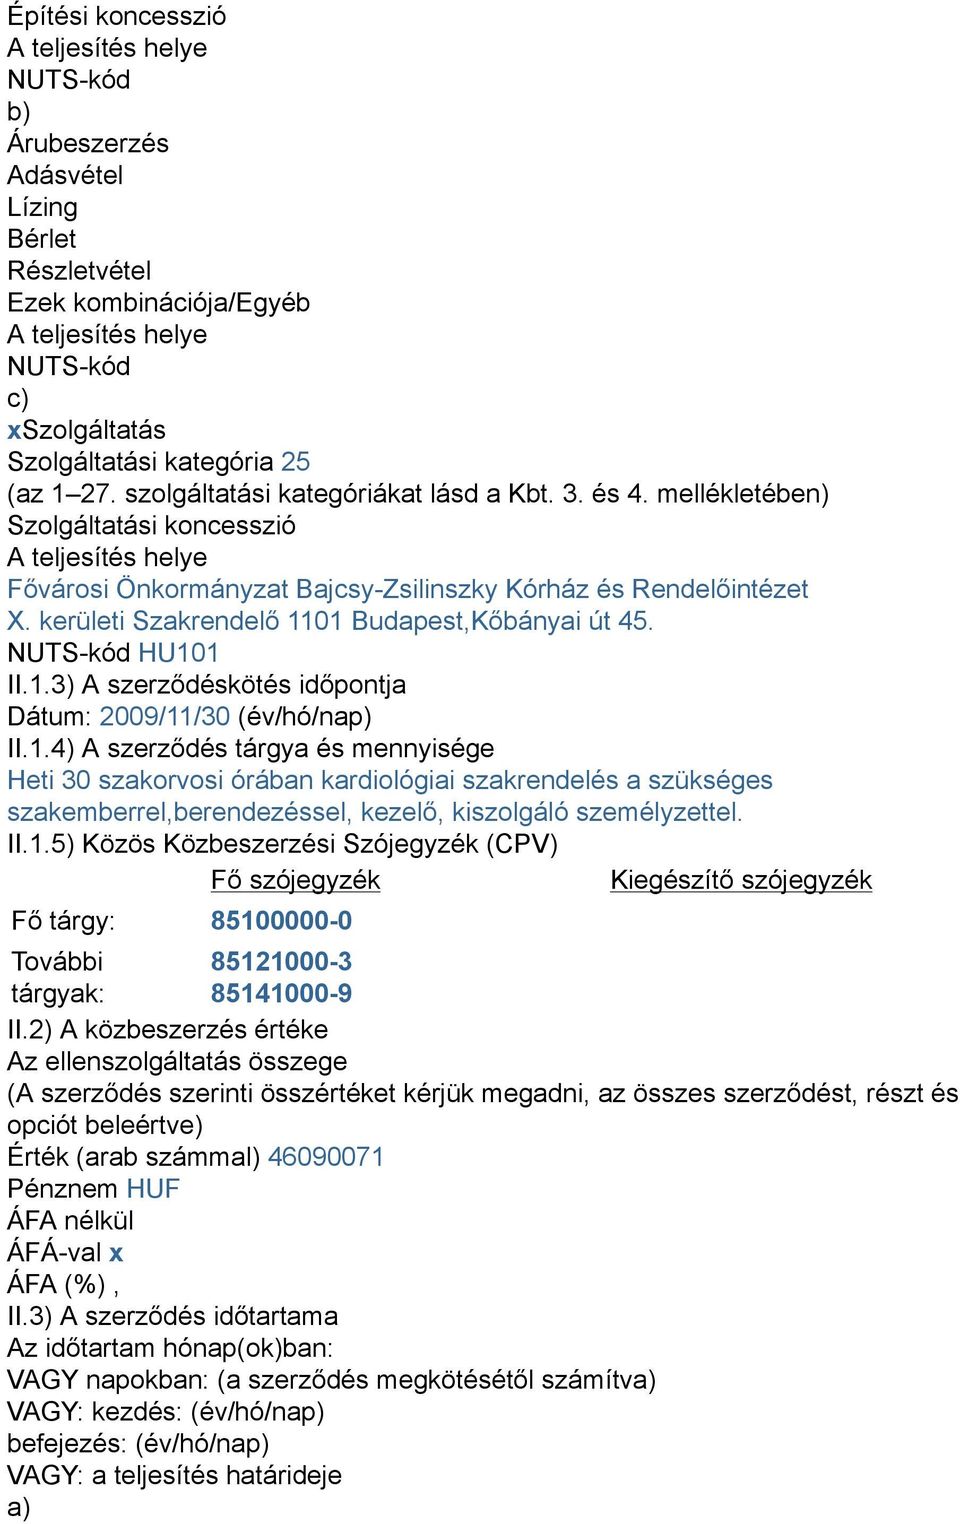 kerületi Szakrendelő 1101 Budapest,Kőbányai út 45. NUTS-kód HU101 II.1.3) A szerződéskötés időpontja Dátum: 2009/11/30 (év/hó/nap) II.1.4) A szerződés tárgya és mennyisége Heti 30 szakorvosi órában kardiológiai szakrendelés a szükséges szakemberrel,berendezéssel, kezelő, kiszolgáló személyzettel.